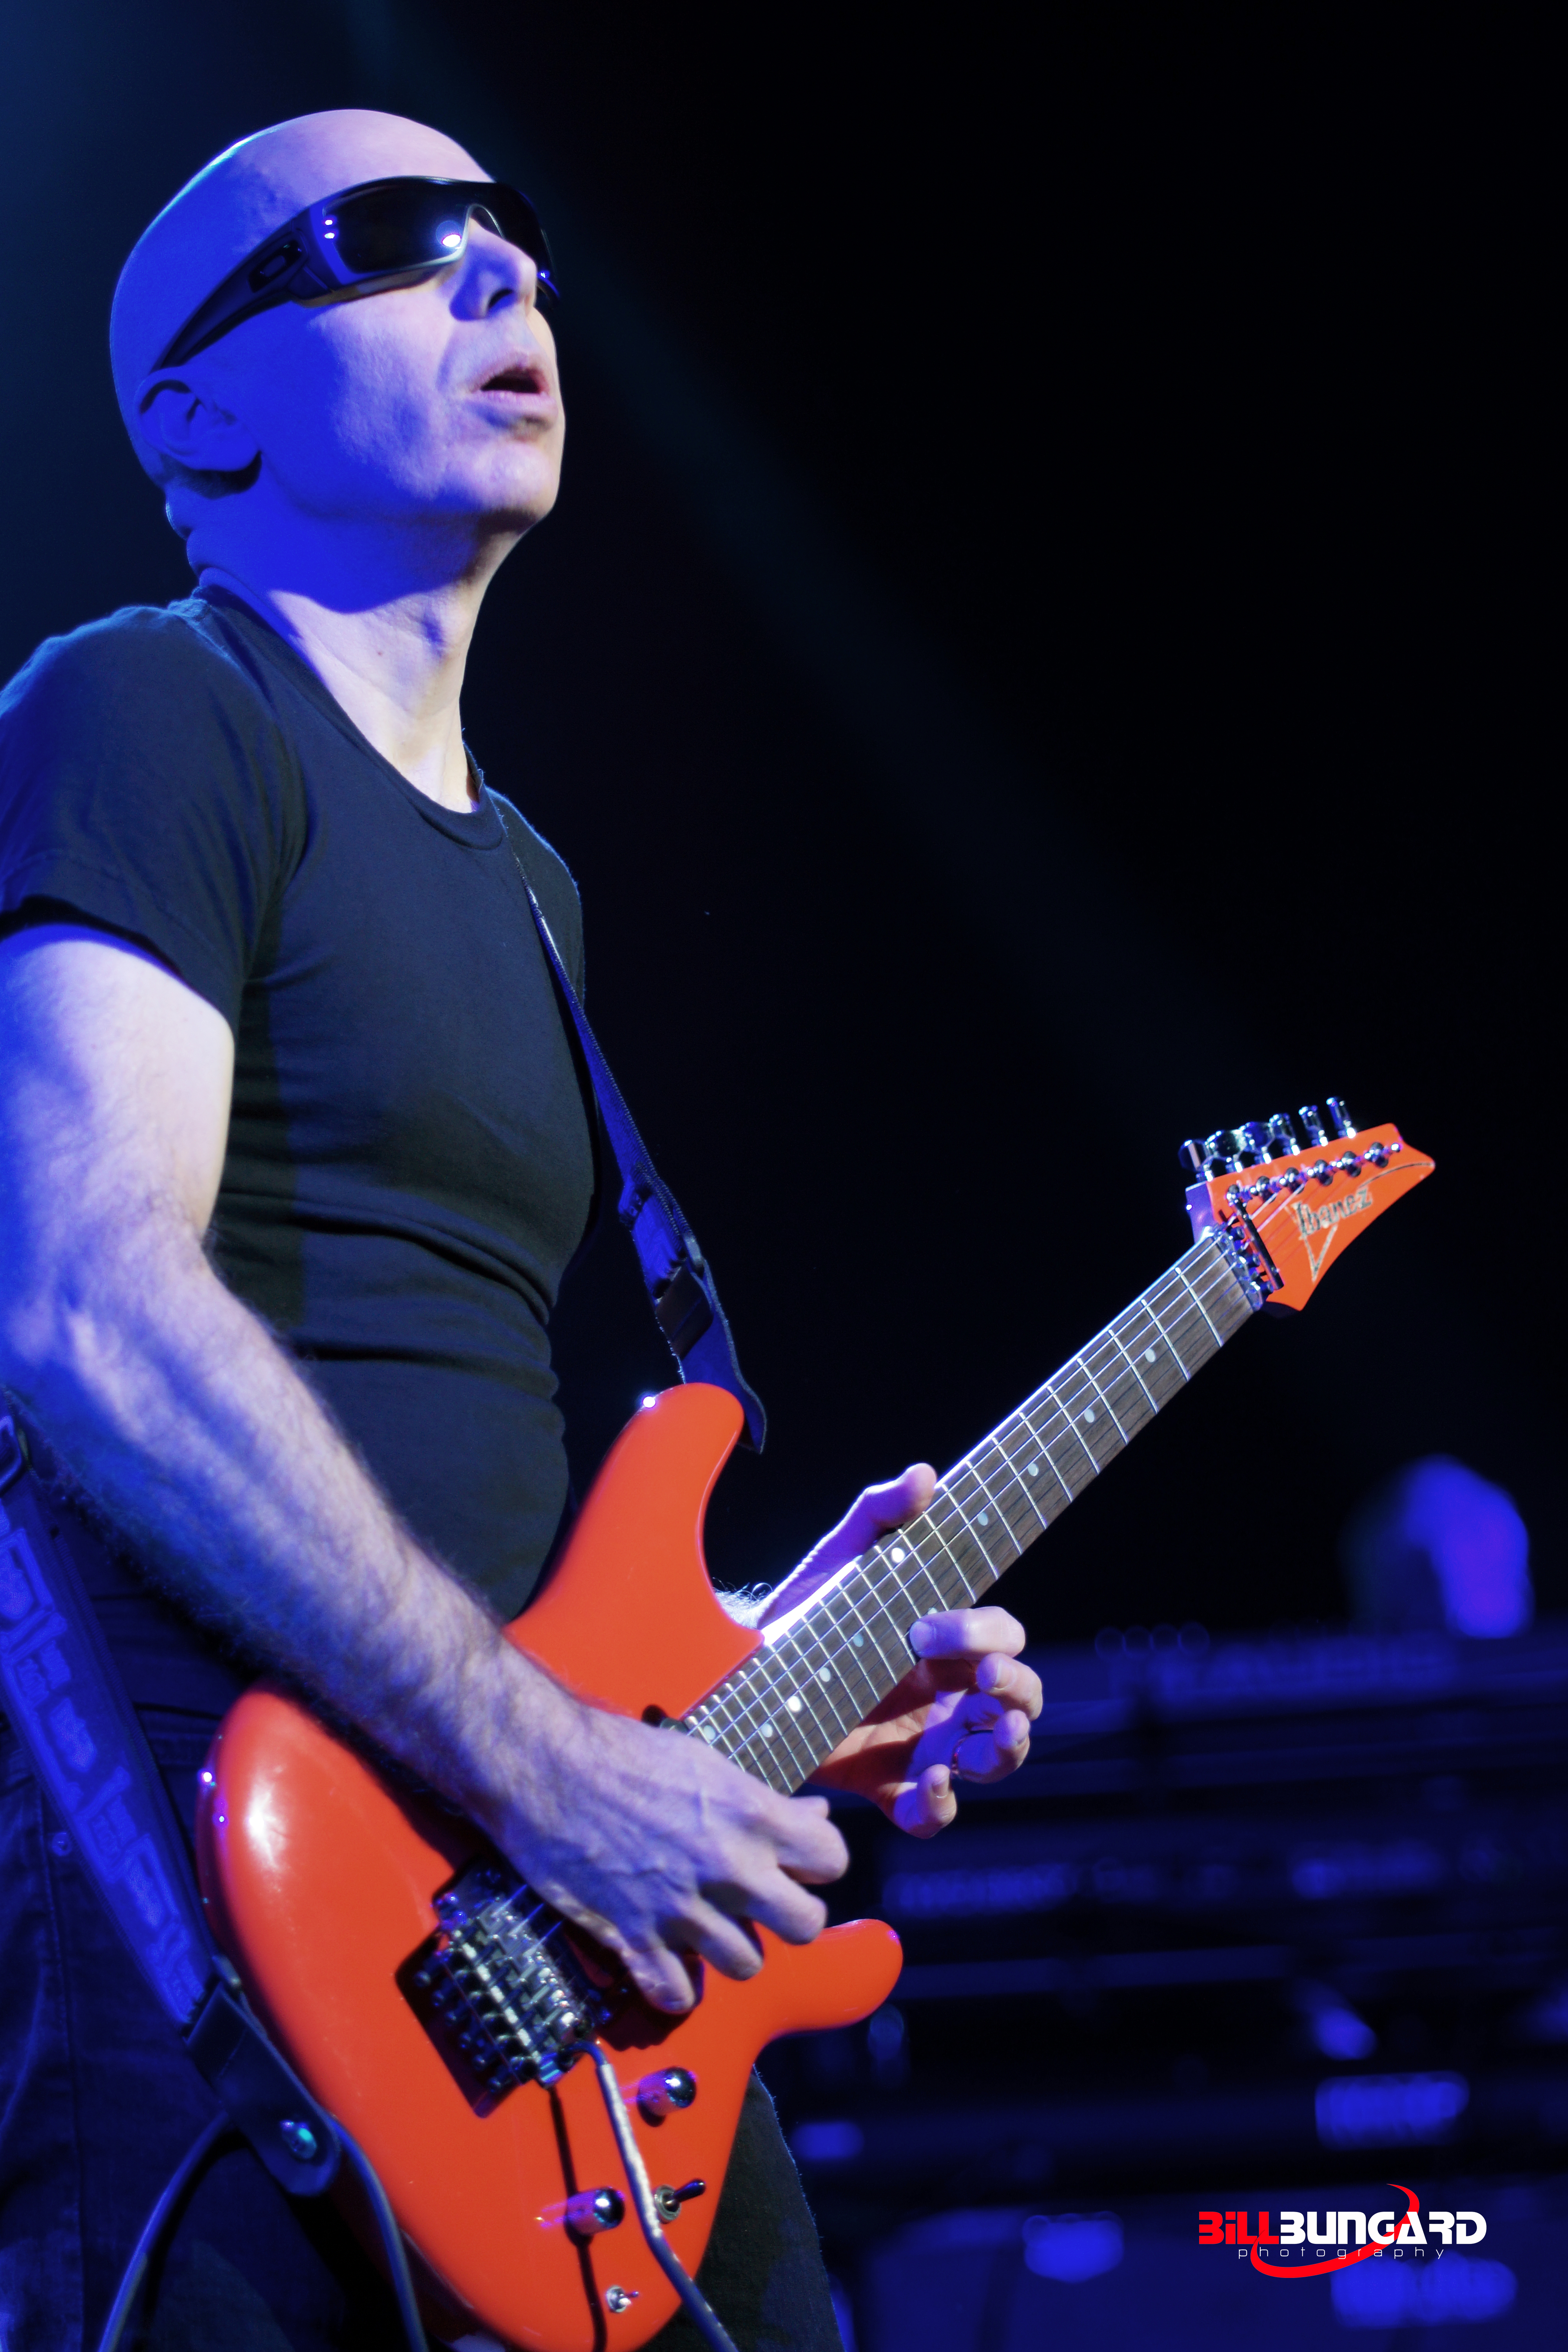 Joe Satriani @ WaMu Theater (Photo by Bill Bungard)